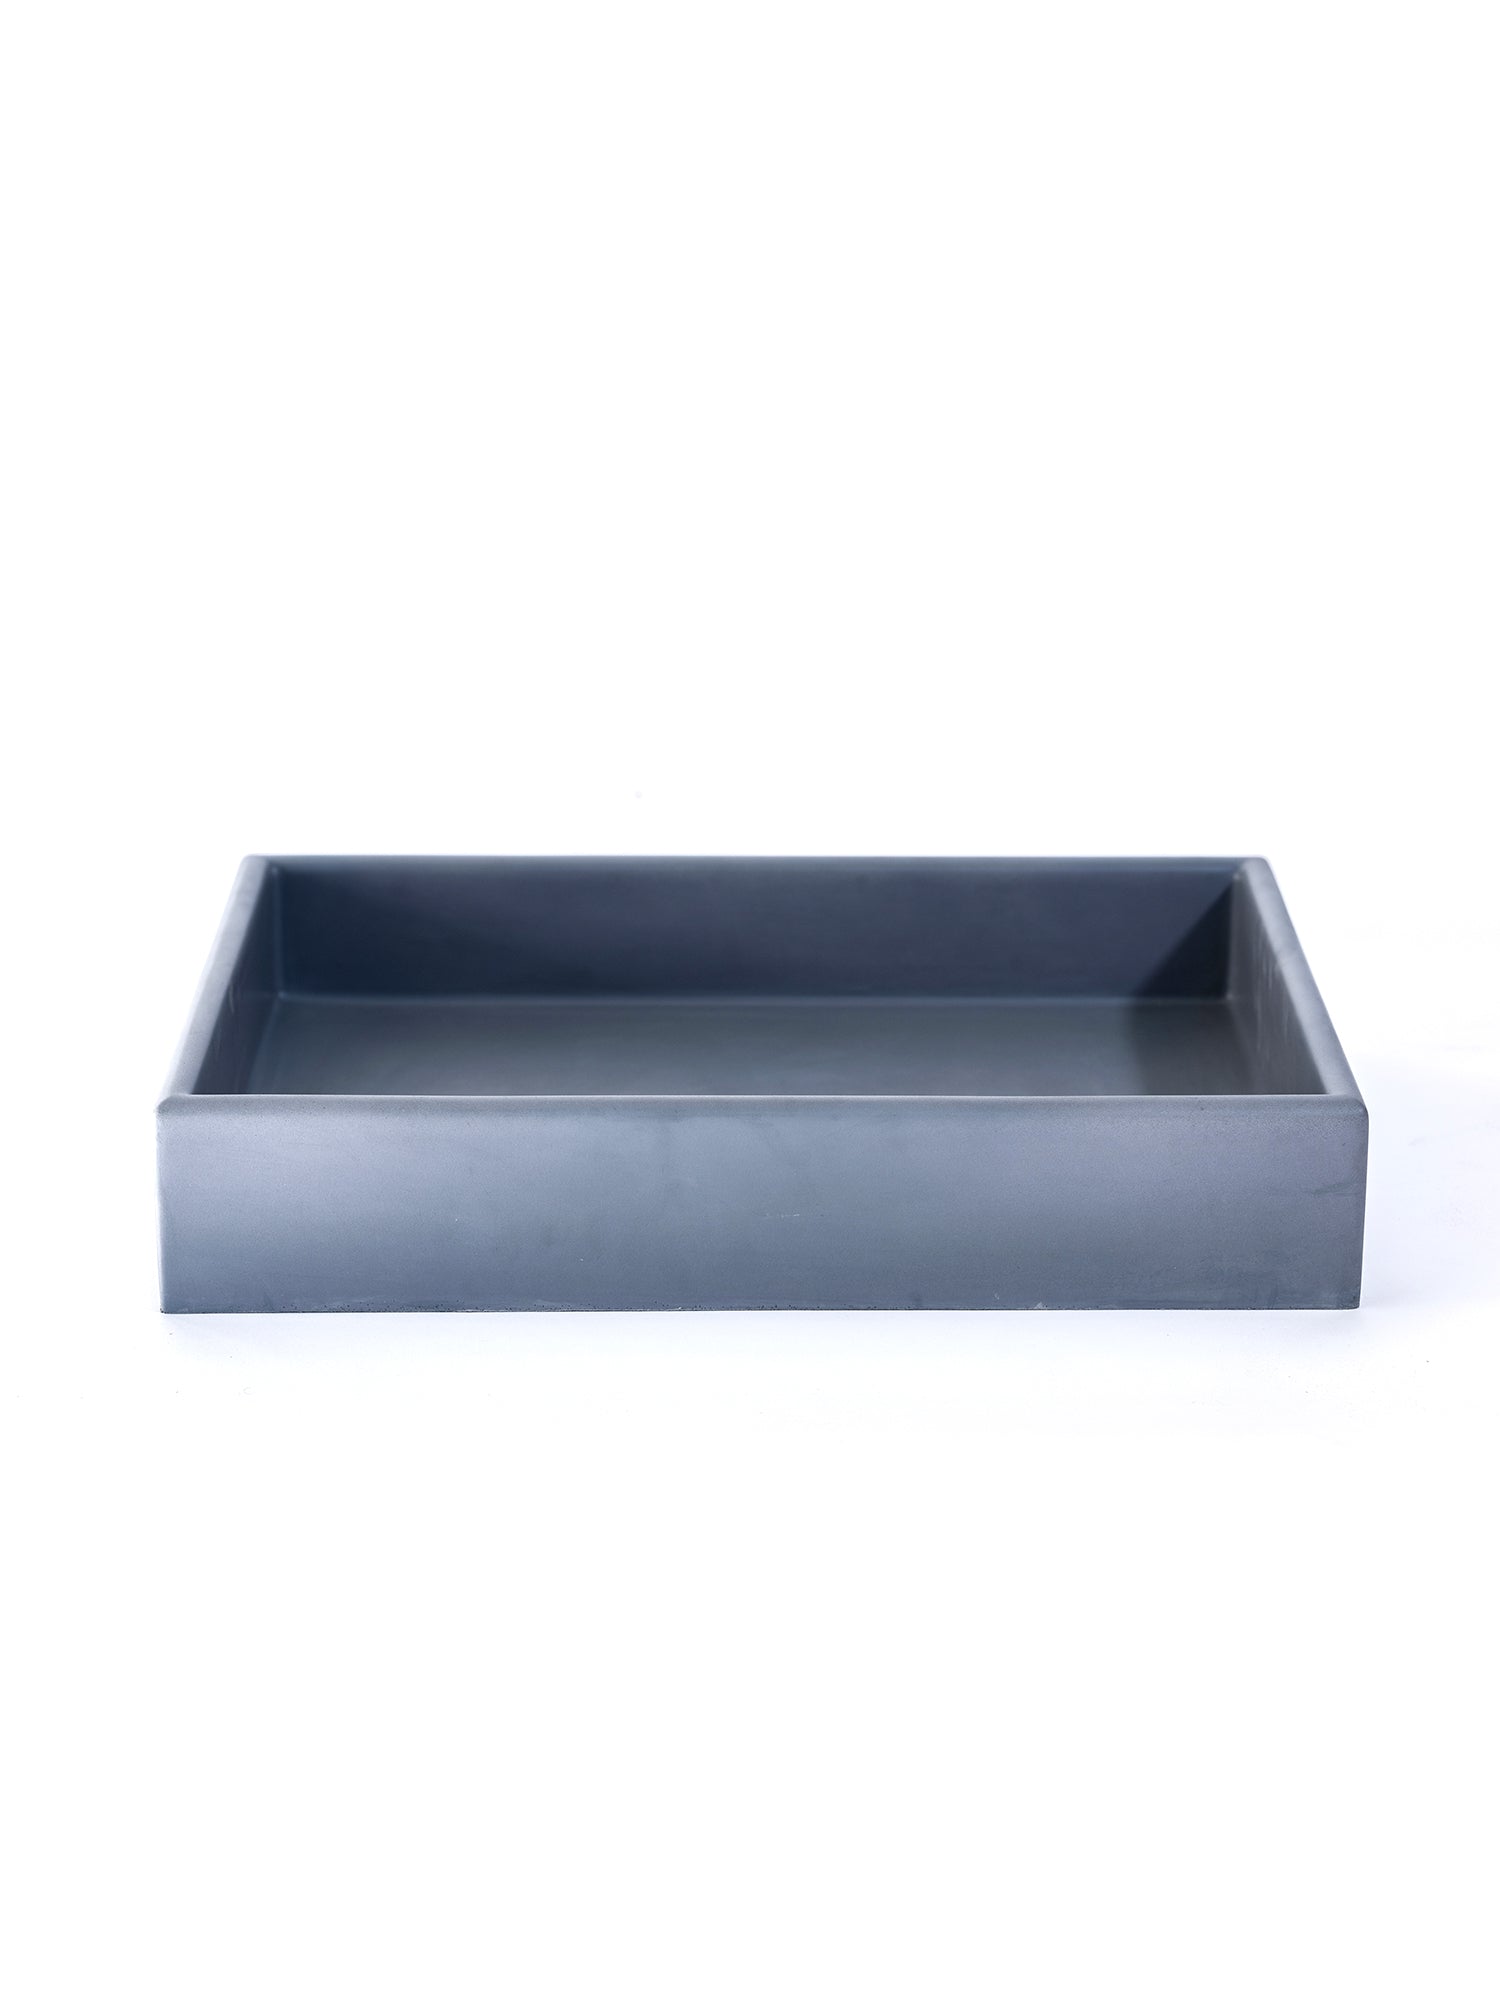 The Box Concrete Countertop Basin (Price Upon Request)